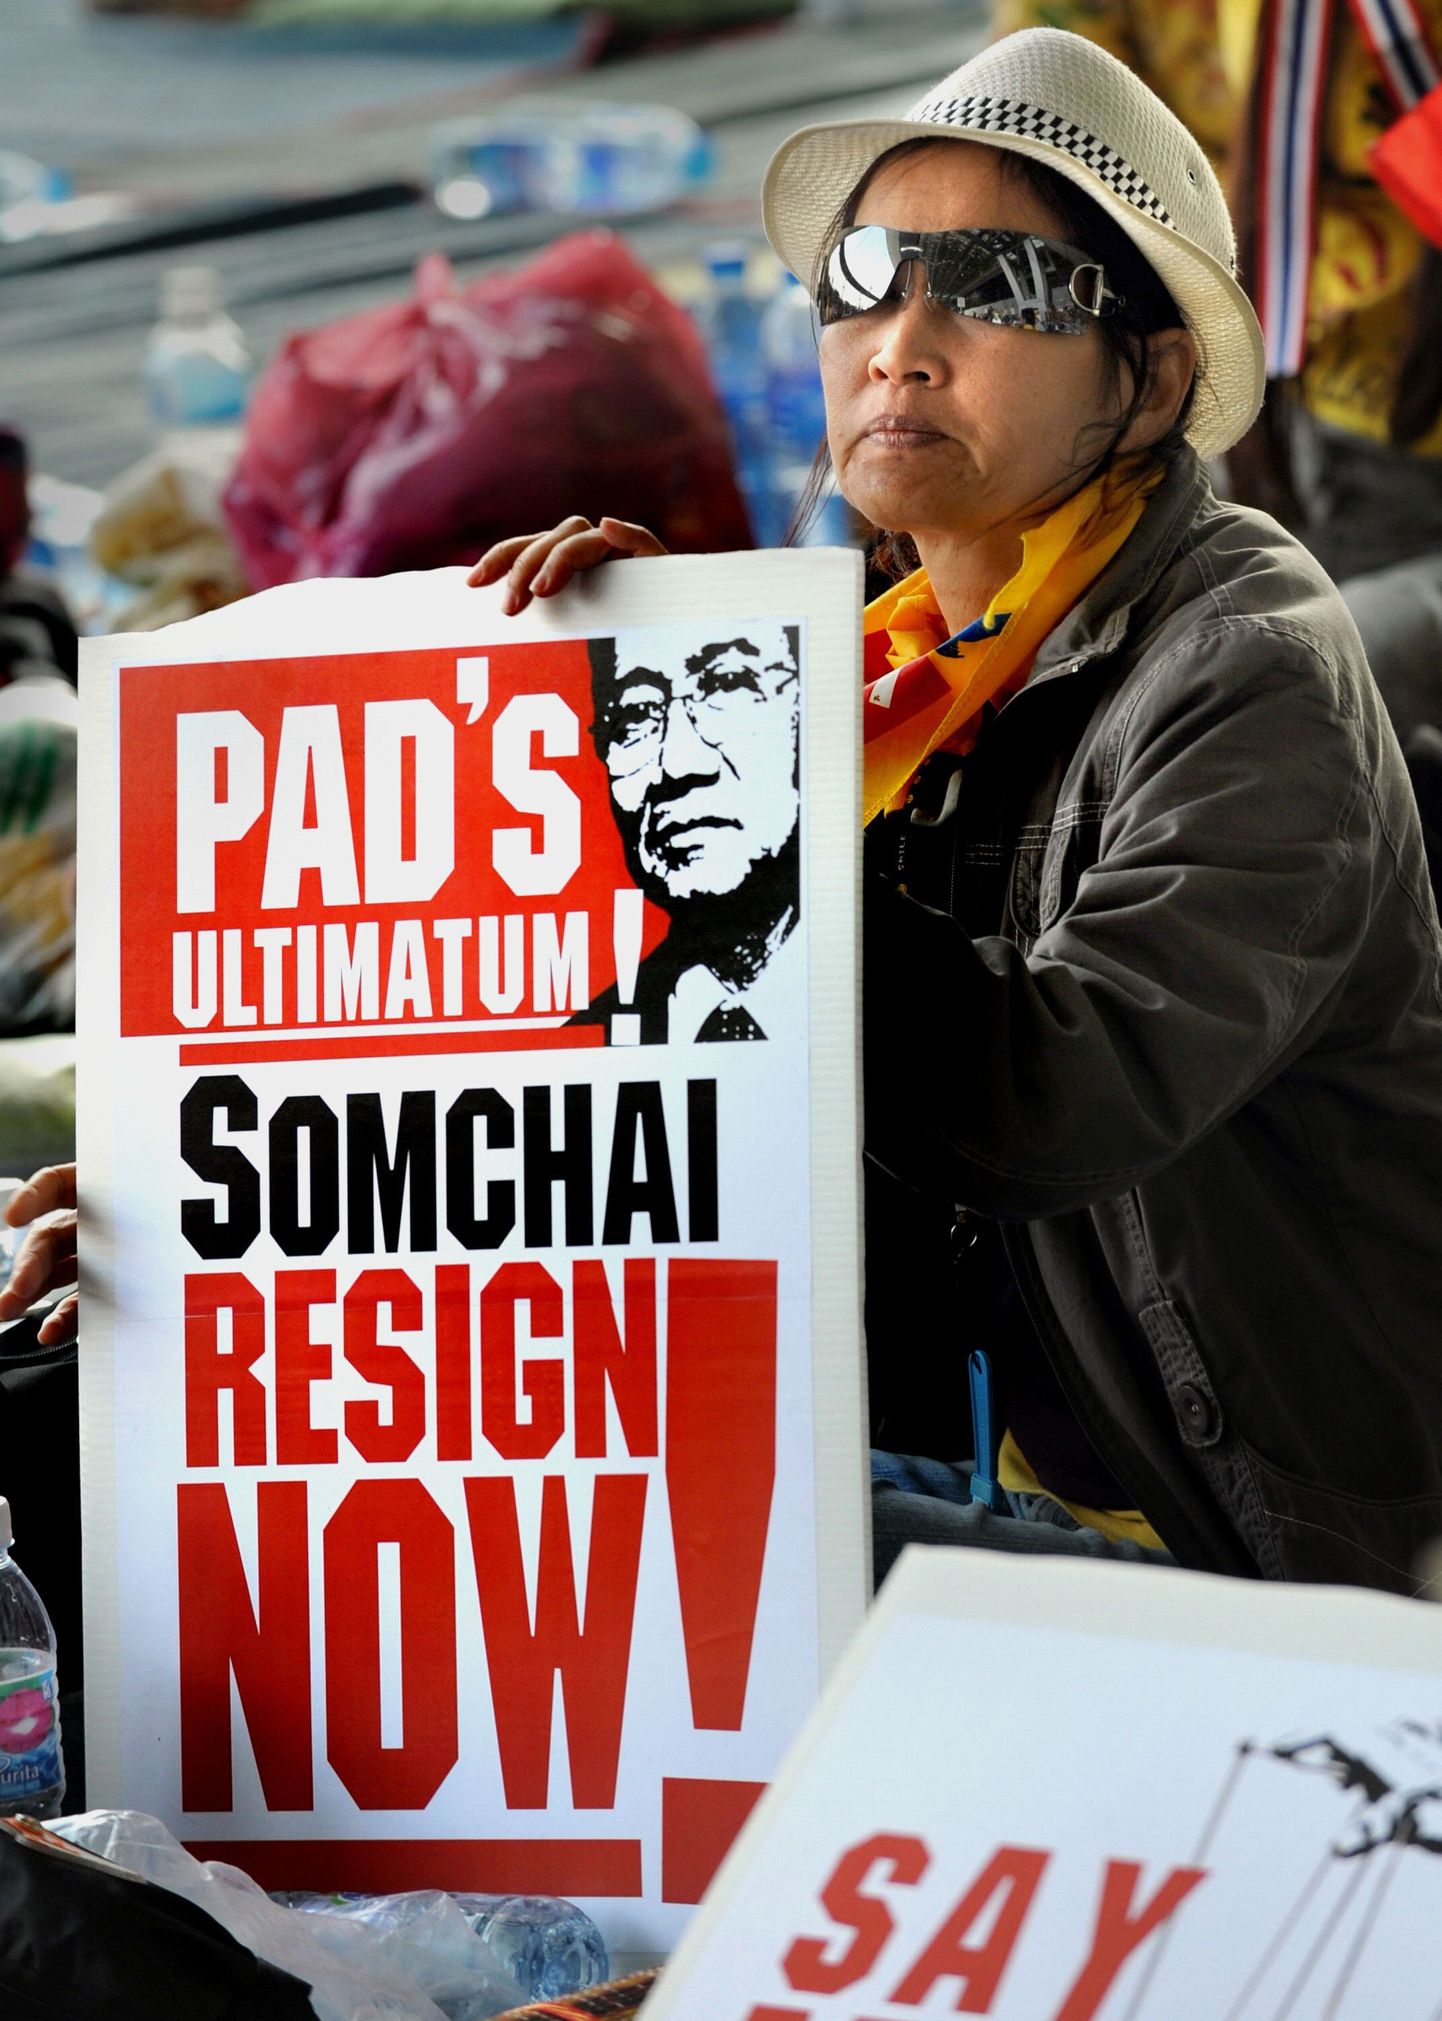 Tai valitsusvastane protestija nõuab Suvarnabhumi rahvusvahelises lennujaamas peaministri tagasiastumist.